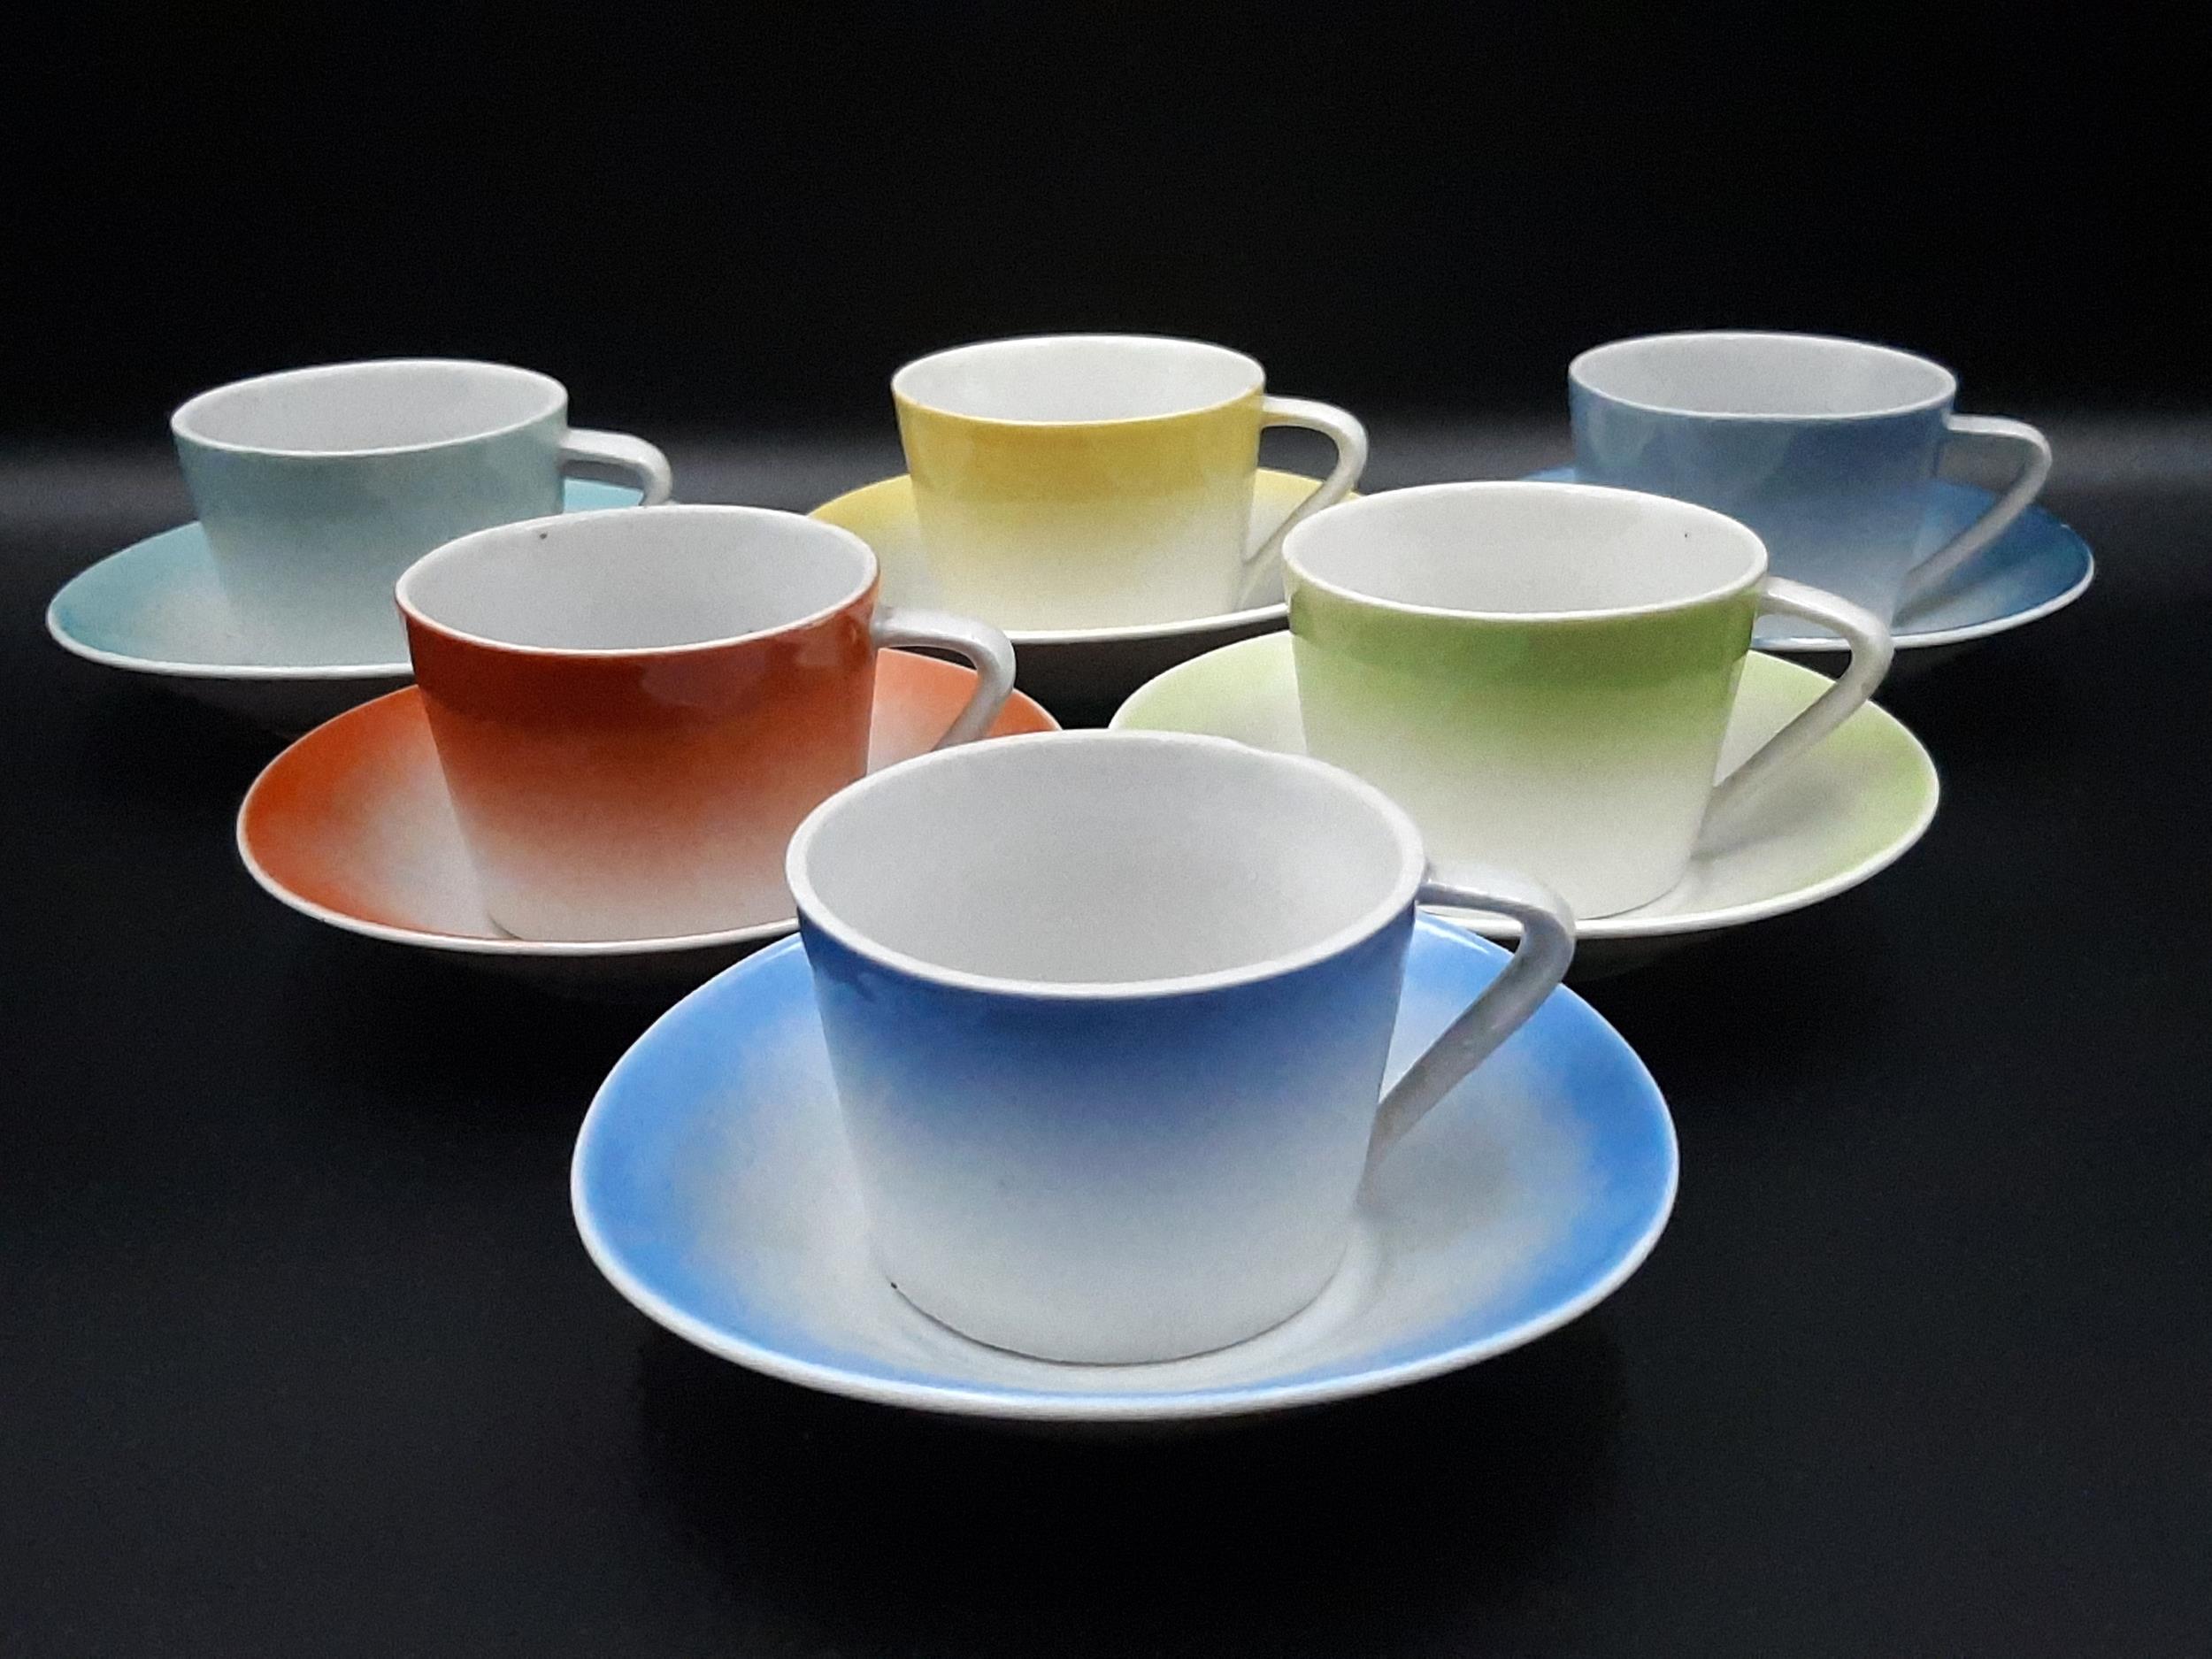 Kőbányai Porcelángyár modern színes csésze